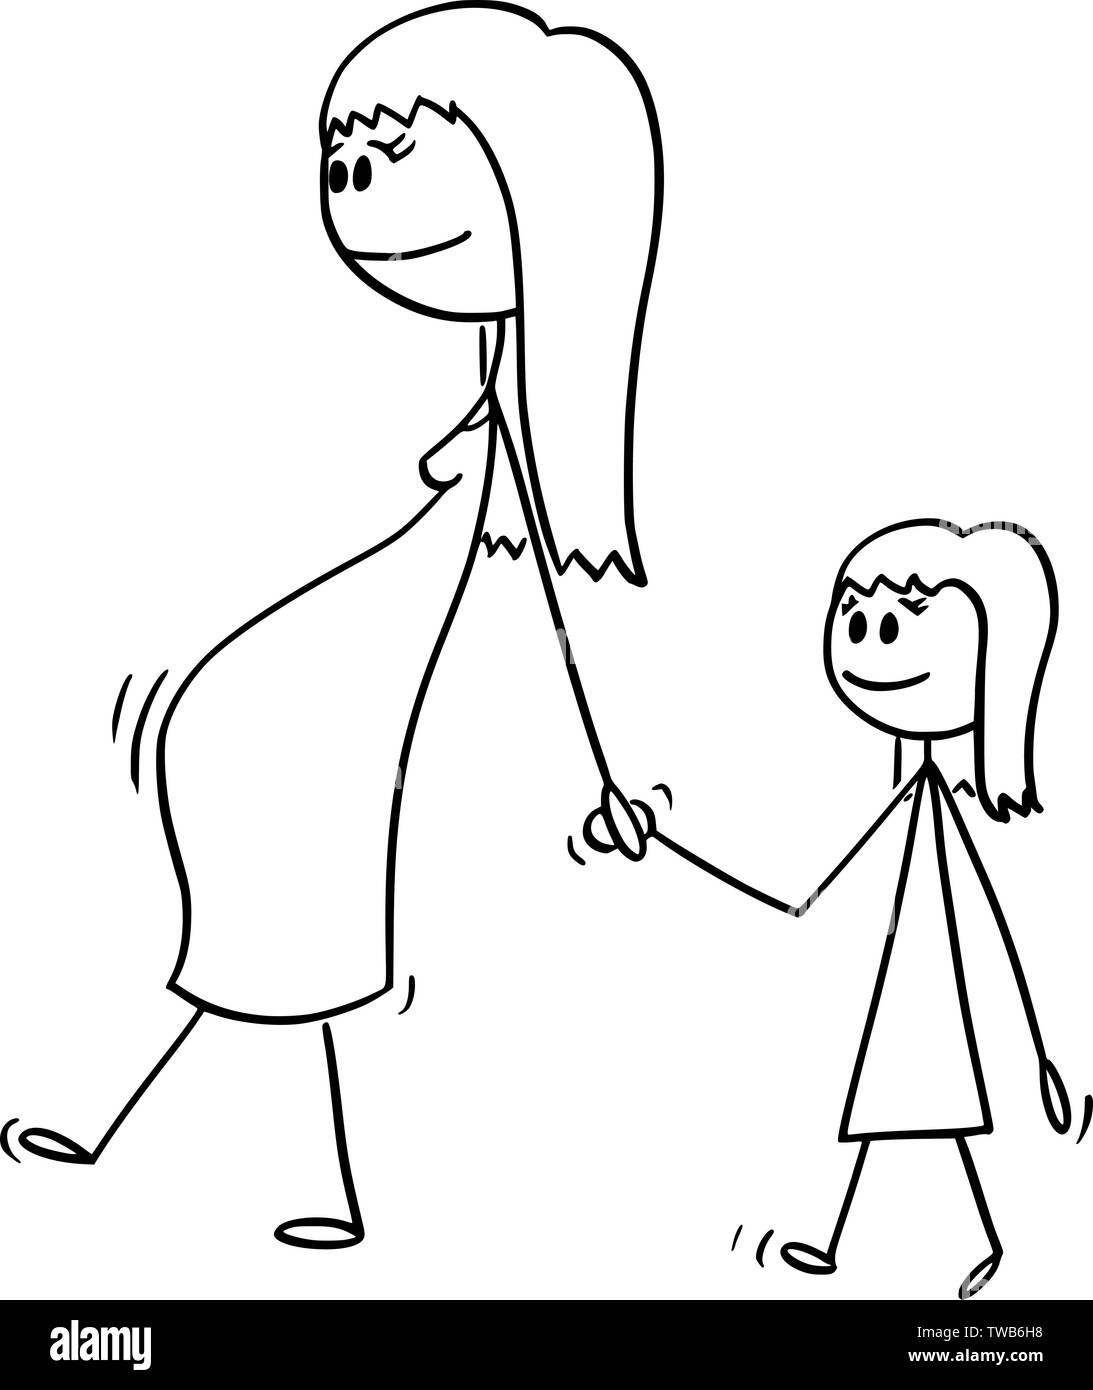 Vector cartoon stick figura disegno illustrazione concettuale della donna durante la gravidanza o la mamma o la madre insieme con una piccola ragazza o figlia. Essi sono a piedi e tenendo le mani. Illustrazione Vettoriale